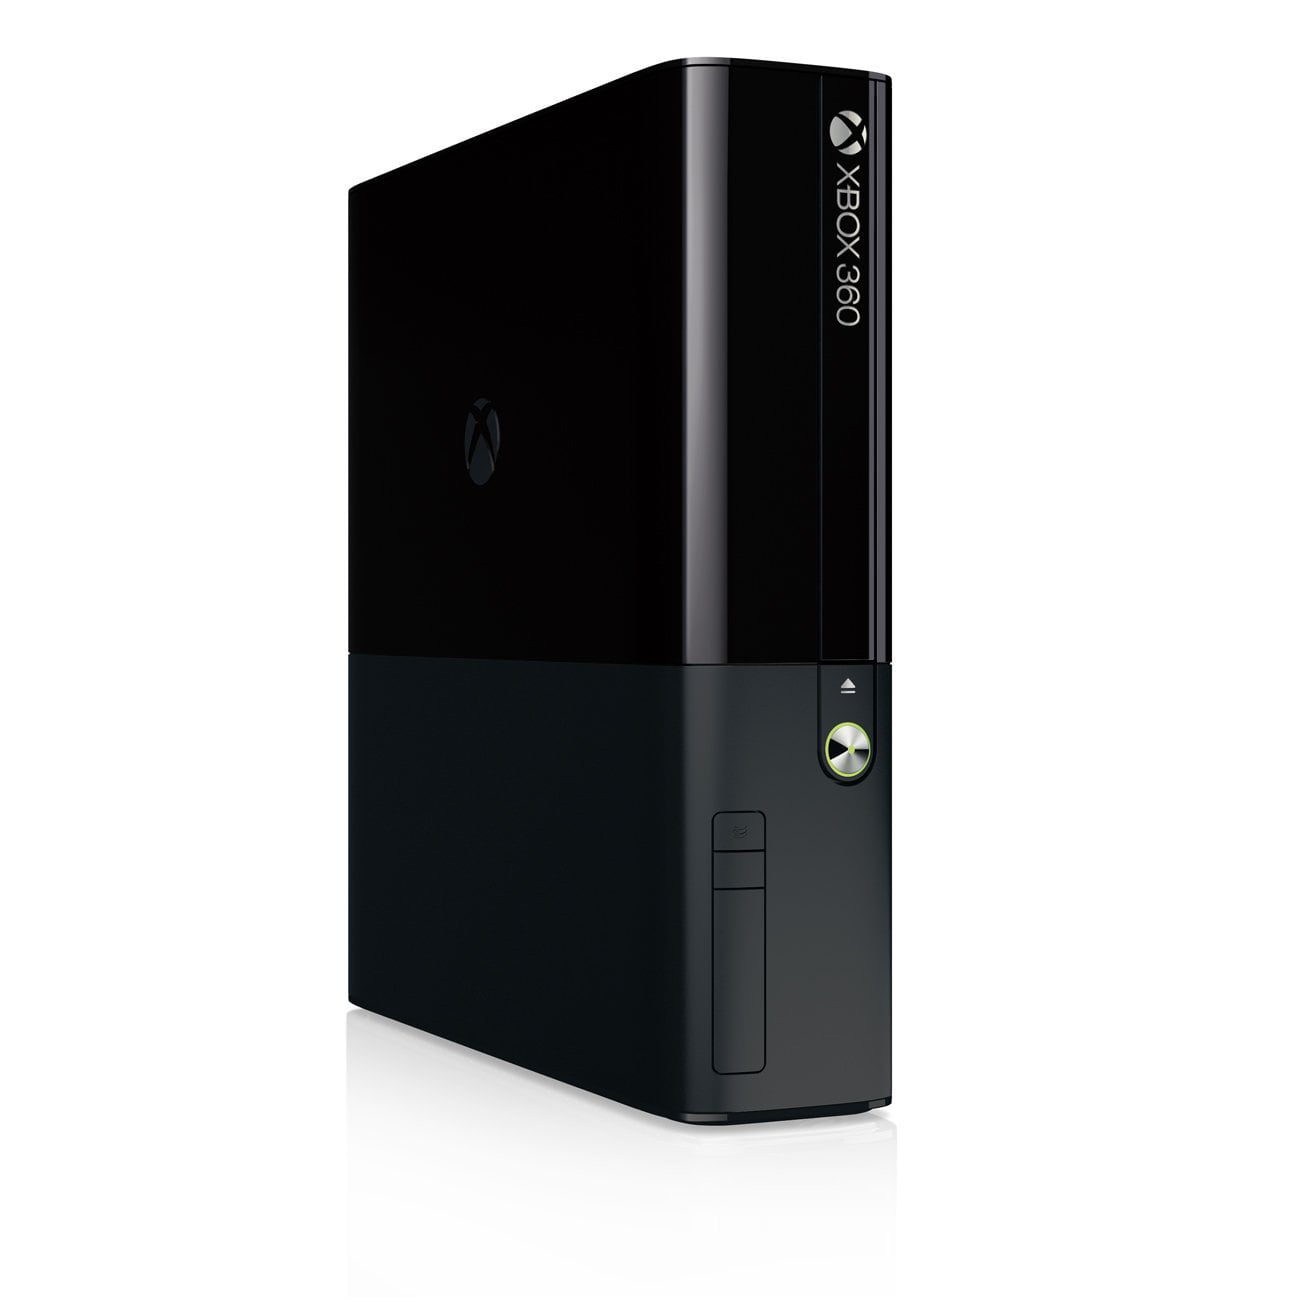 Xbox 360 4GB Console 